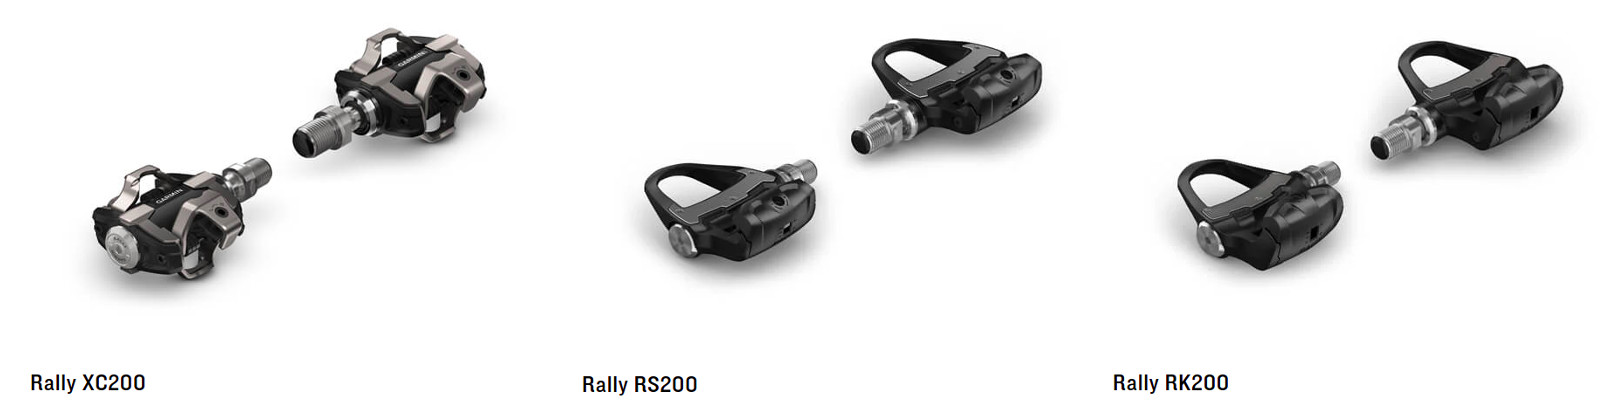 Garmin Rally - педалі, що забезпечують надійні вимірювання потужності та динаміку руху на велосипеді